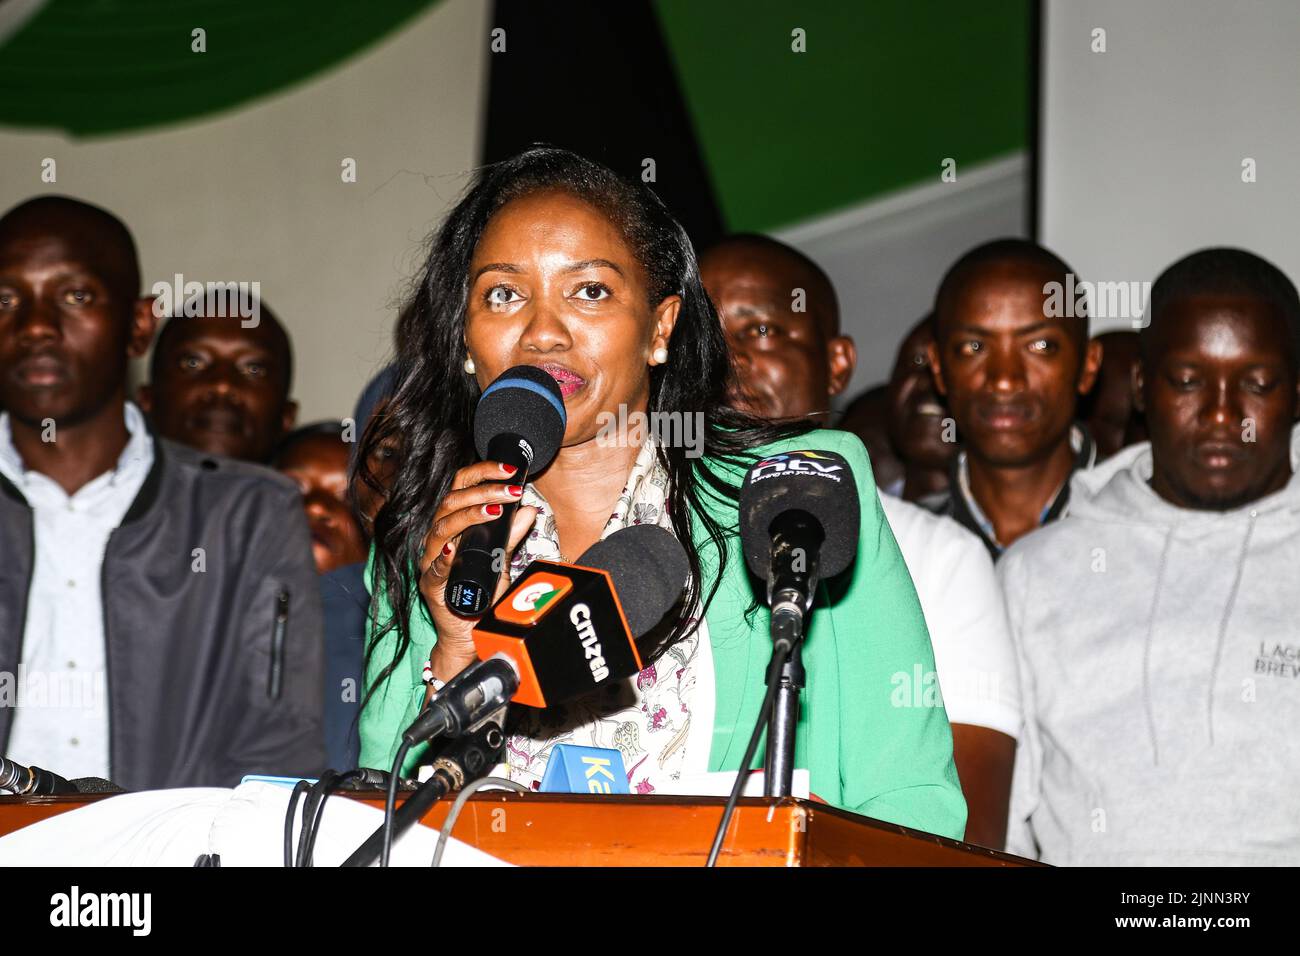 Susan Kihika spricht kurz nachdem sie zur Gouverneurin des Nakuru County ernannt wurde. Die Kenianer warten darauf, dass die Präsidentschaftswahlen abgeschlossen sind, um ihren nächsten Präsidenten kennen zu können, wobei das Rennen zwischen Raila Odinga und William Ruto sehr eng ist. Stockfoto